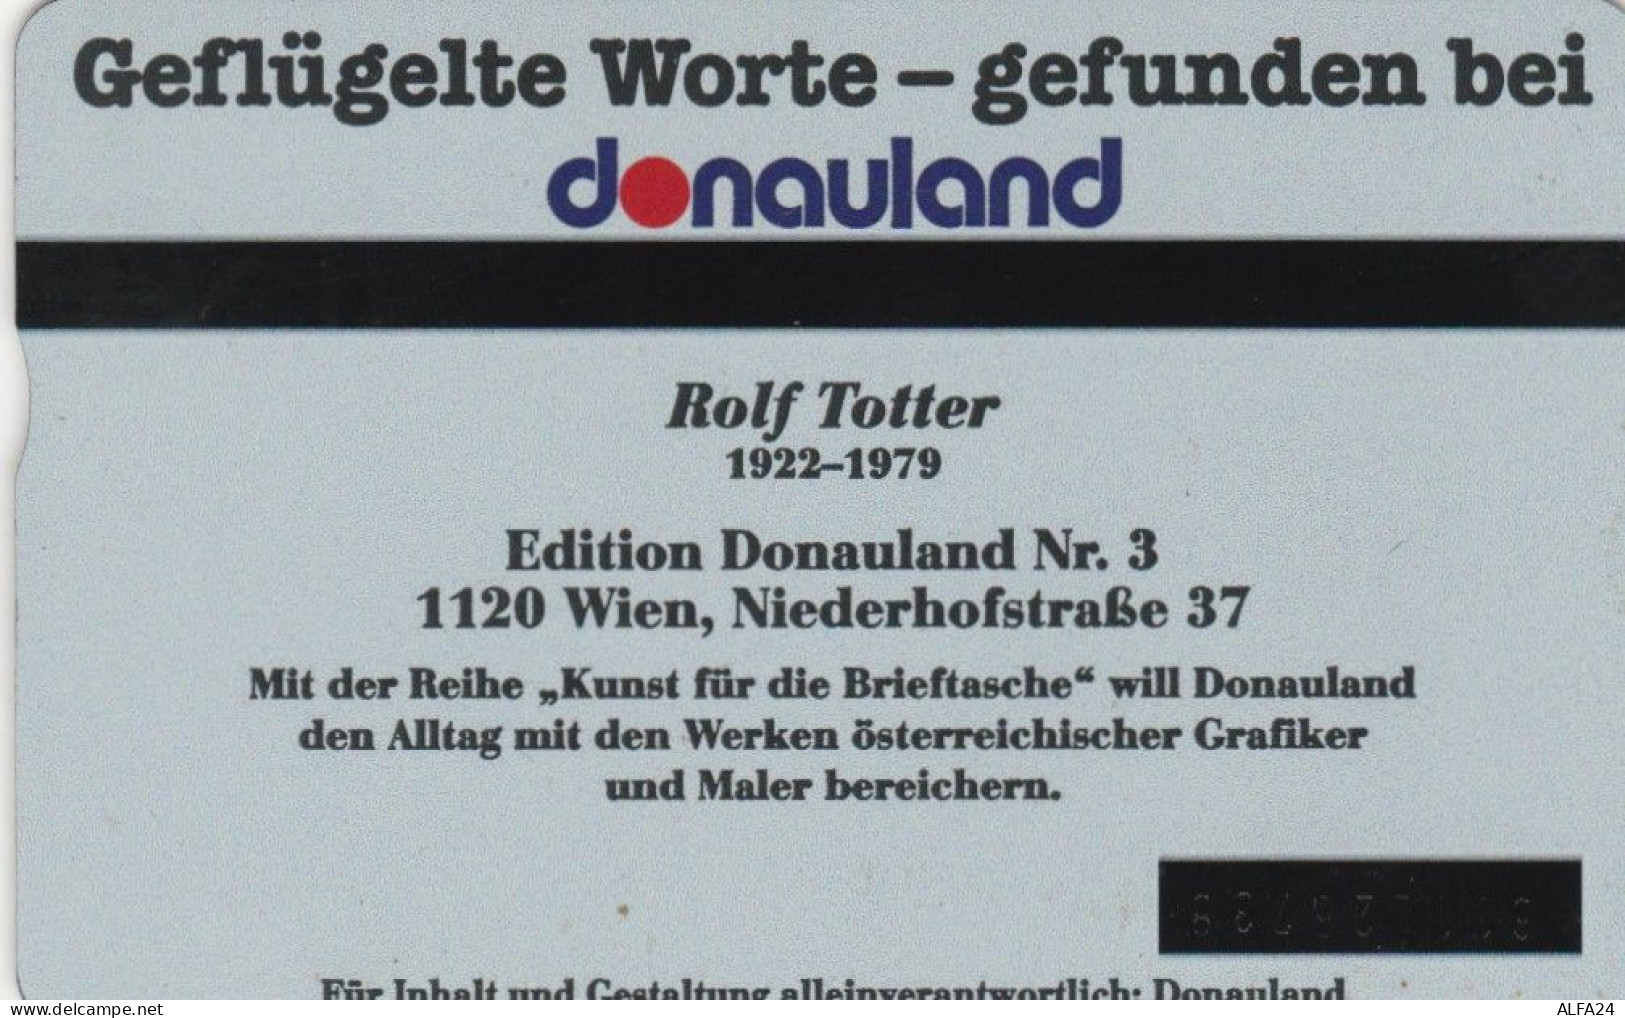 PHONE CARD AUSTRIA (E75.12.6 - Oesterreich